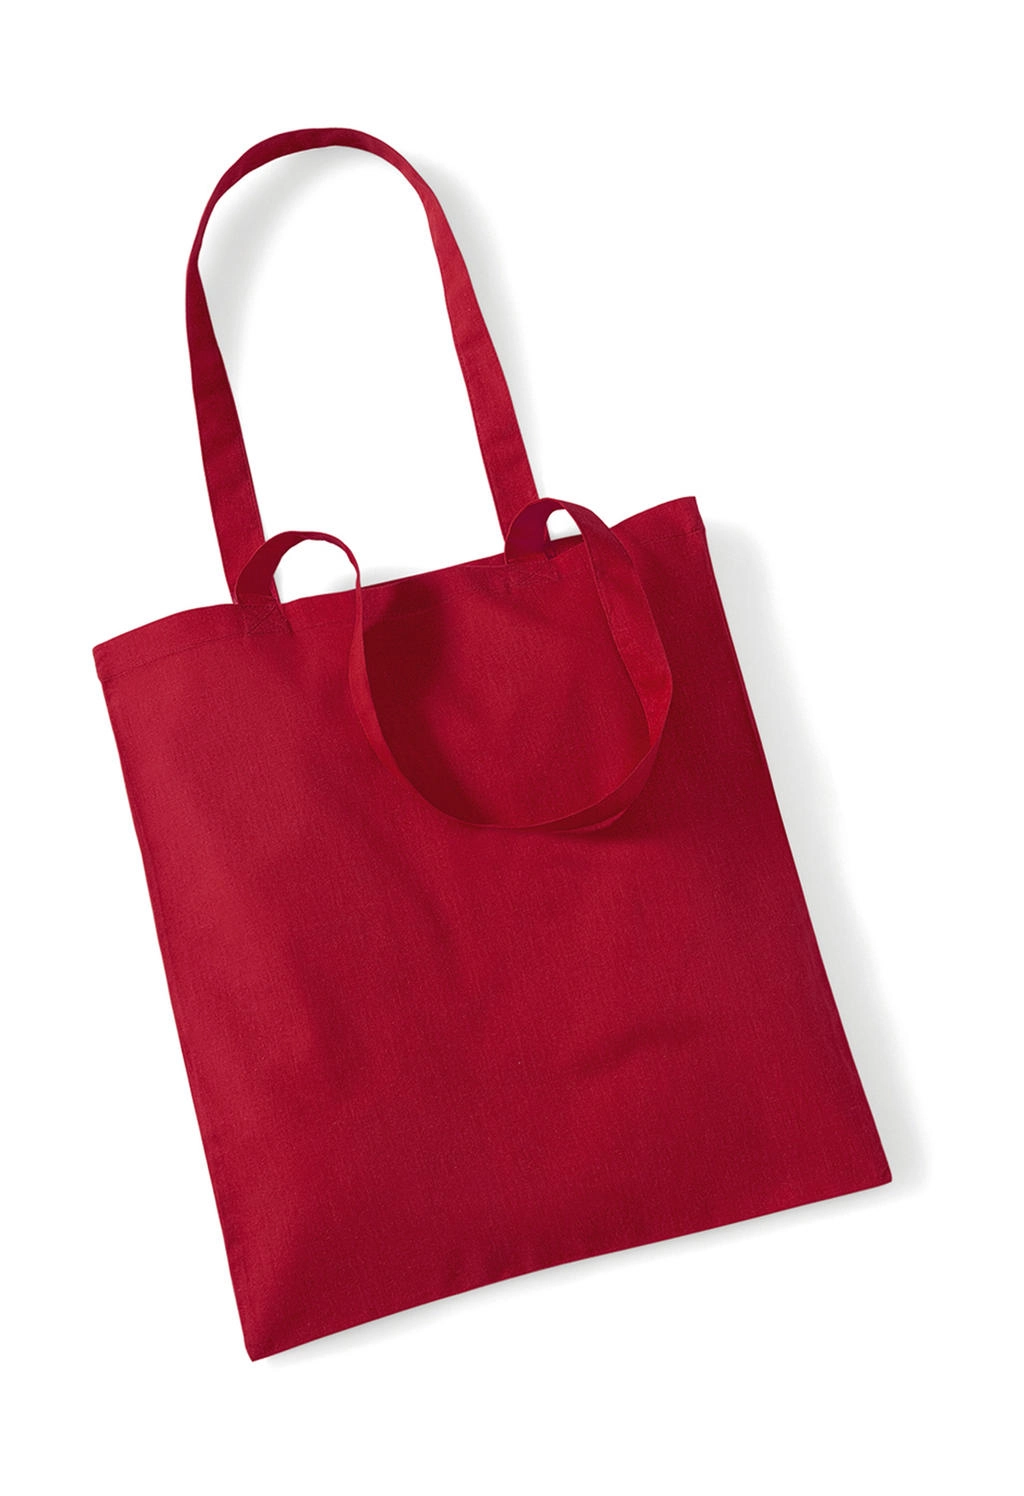 Bag for Life - Long Handles zum Besticken und Bedrucken in der Farbe Classic Red mit Ihren Logo, Schriftzug oder Motiv.